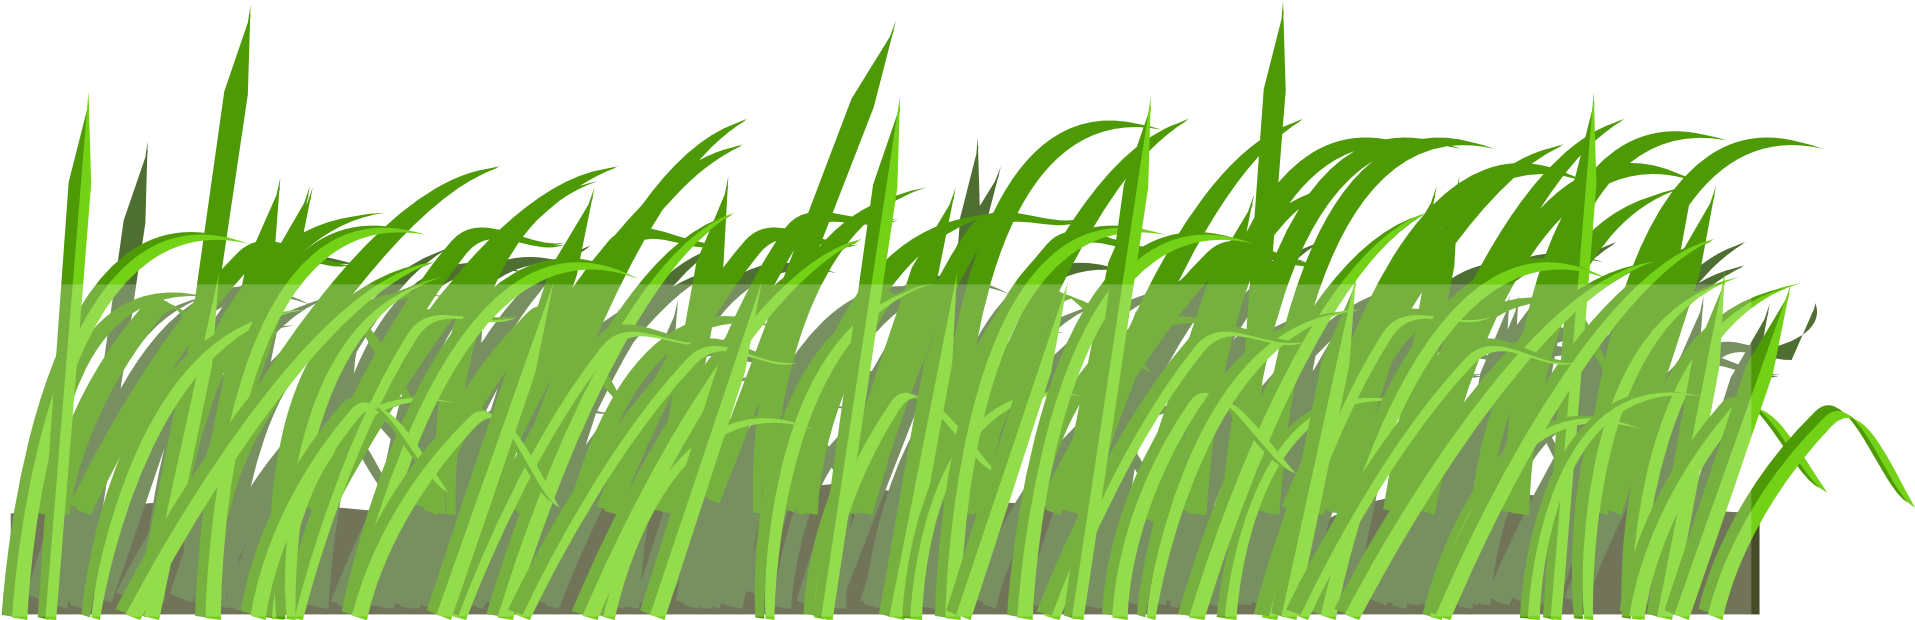 Lawn Cartoon Clip Art - Organisms Respond To Stimuli (1920x960)